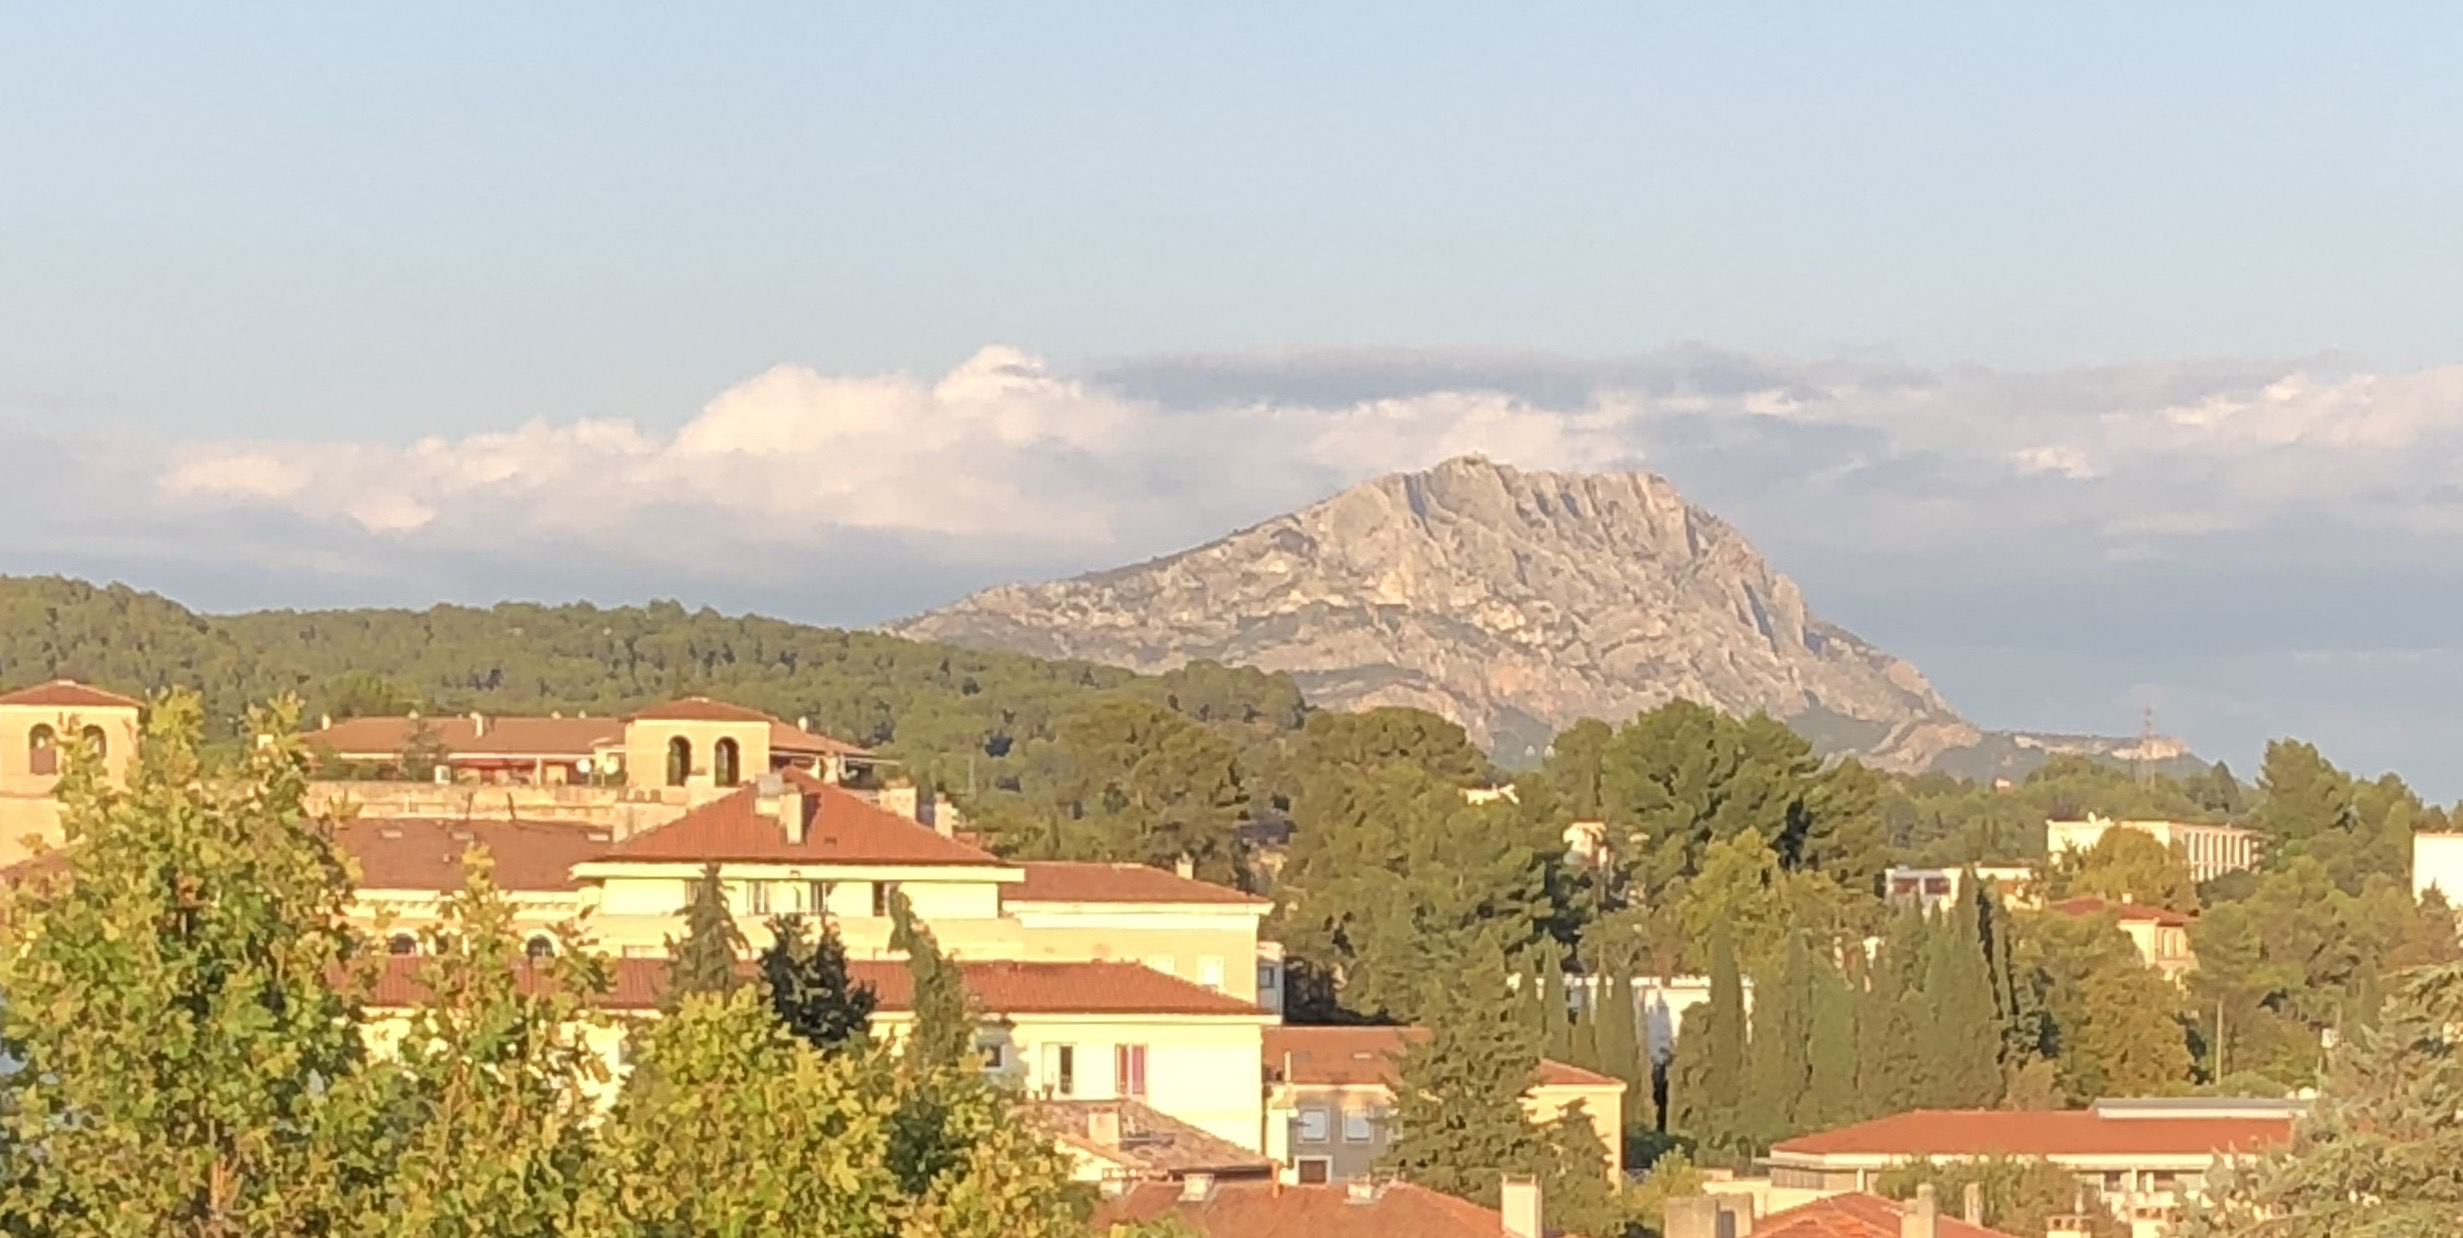 Mont Sainte Victoire (Cezanne’s Mountain)